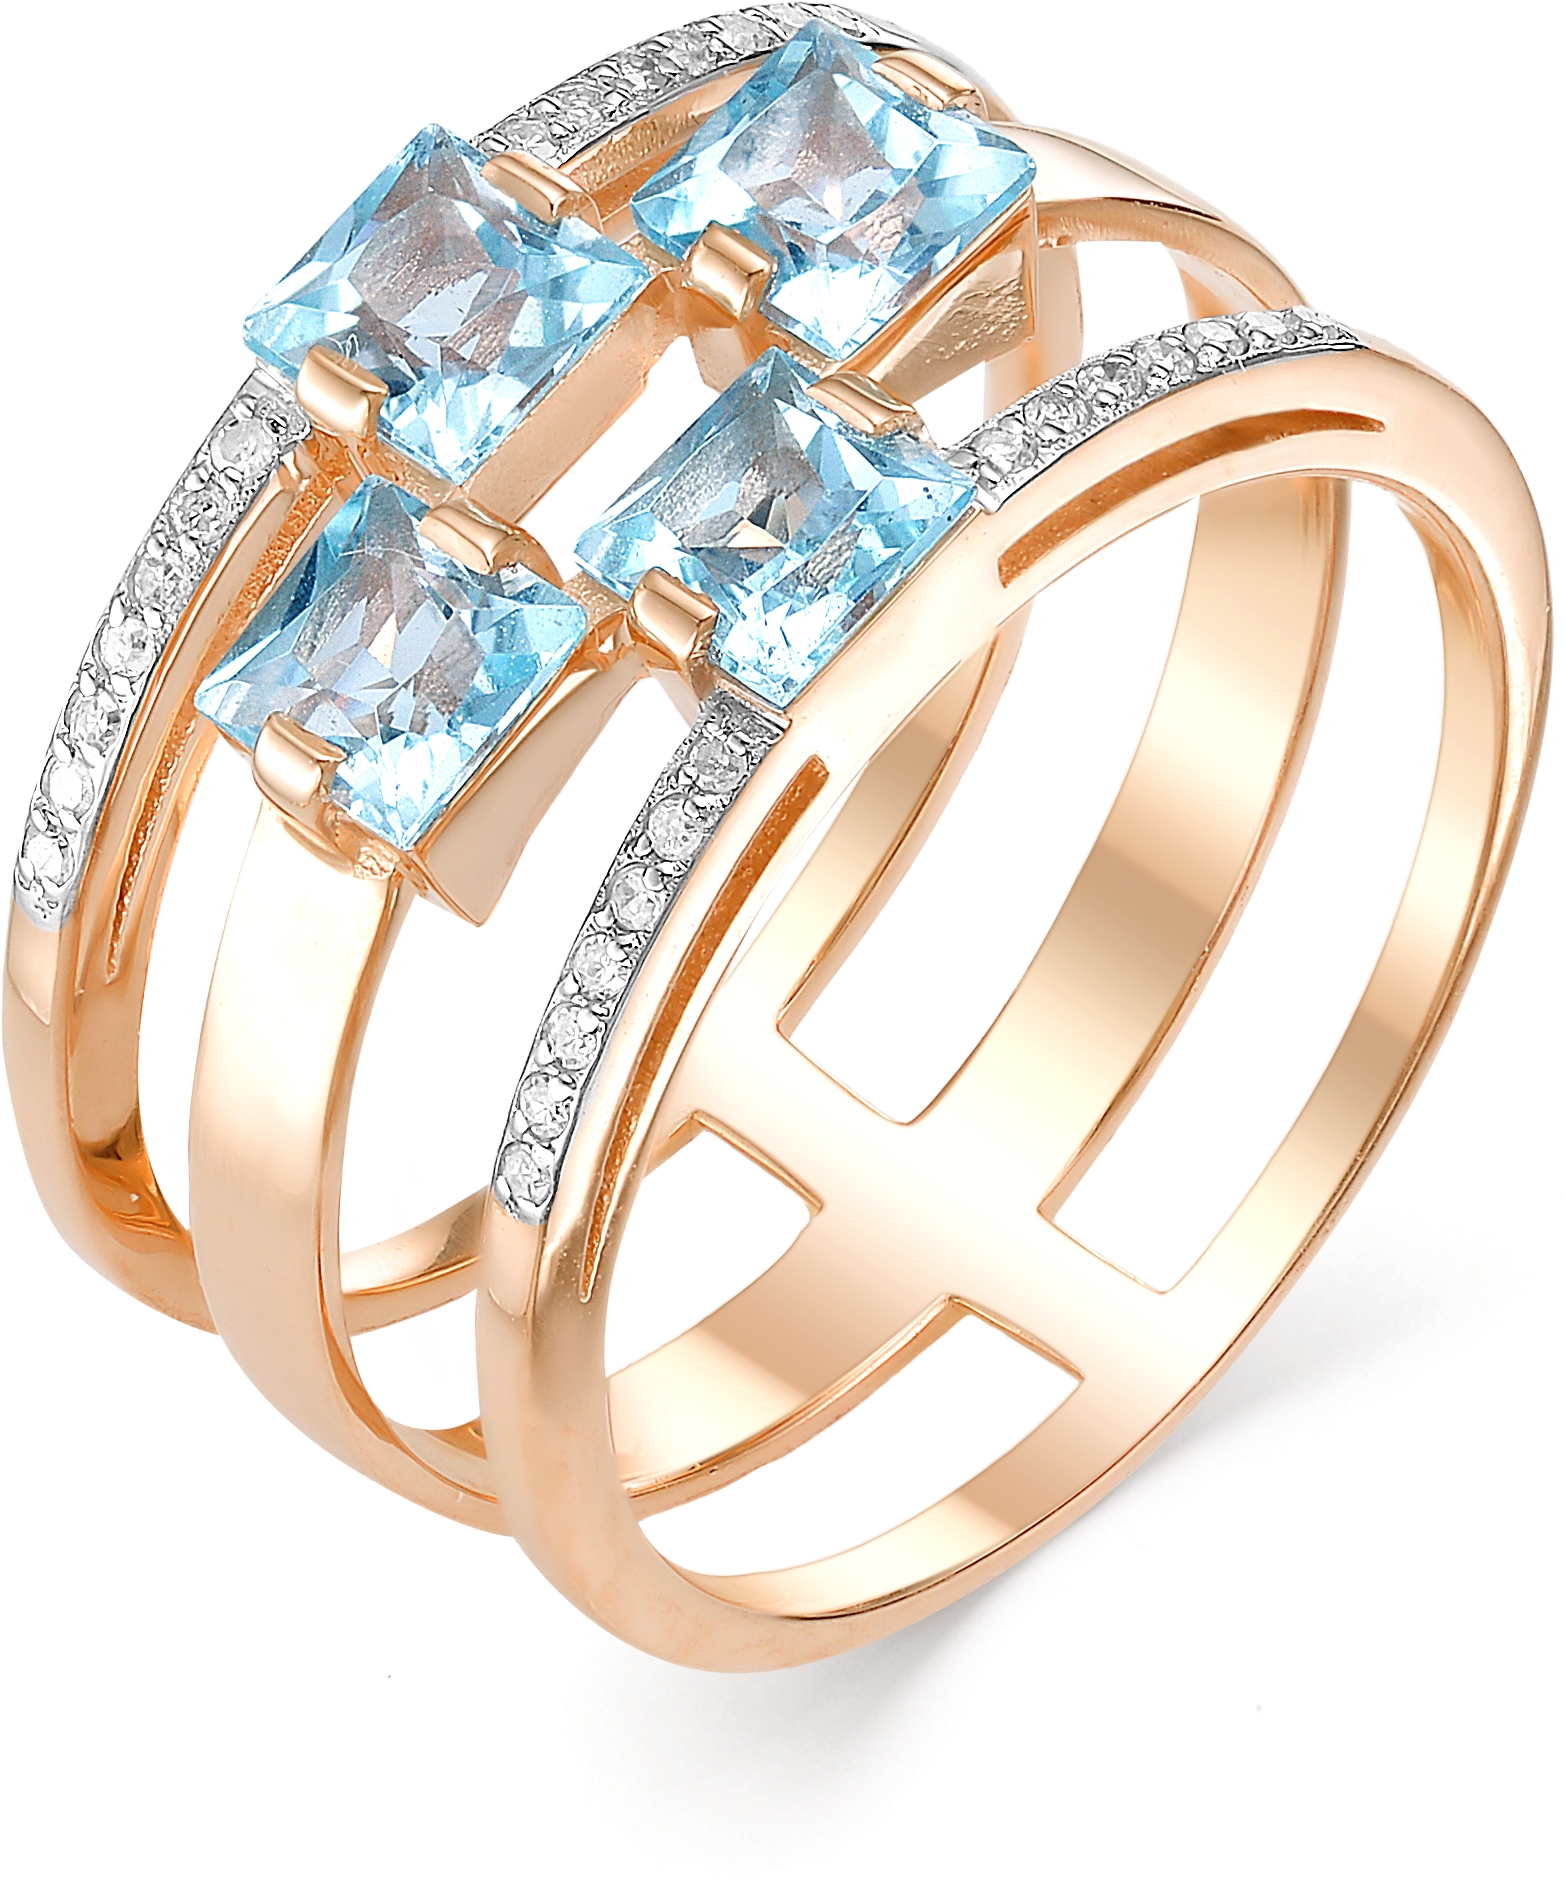 Алькор золотое кольцо с бриллиантами эксклюзив